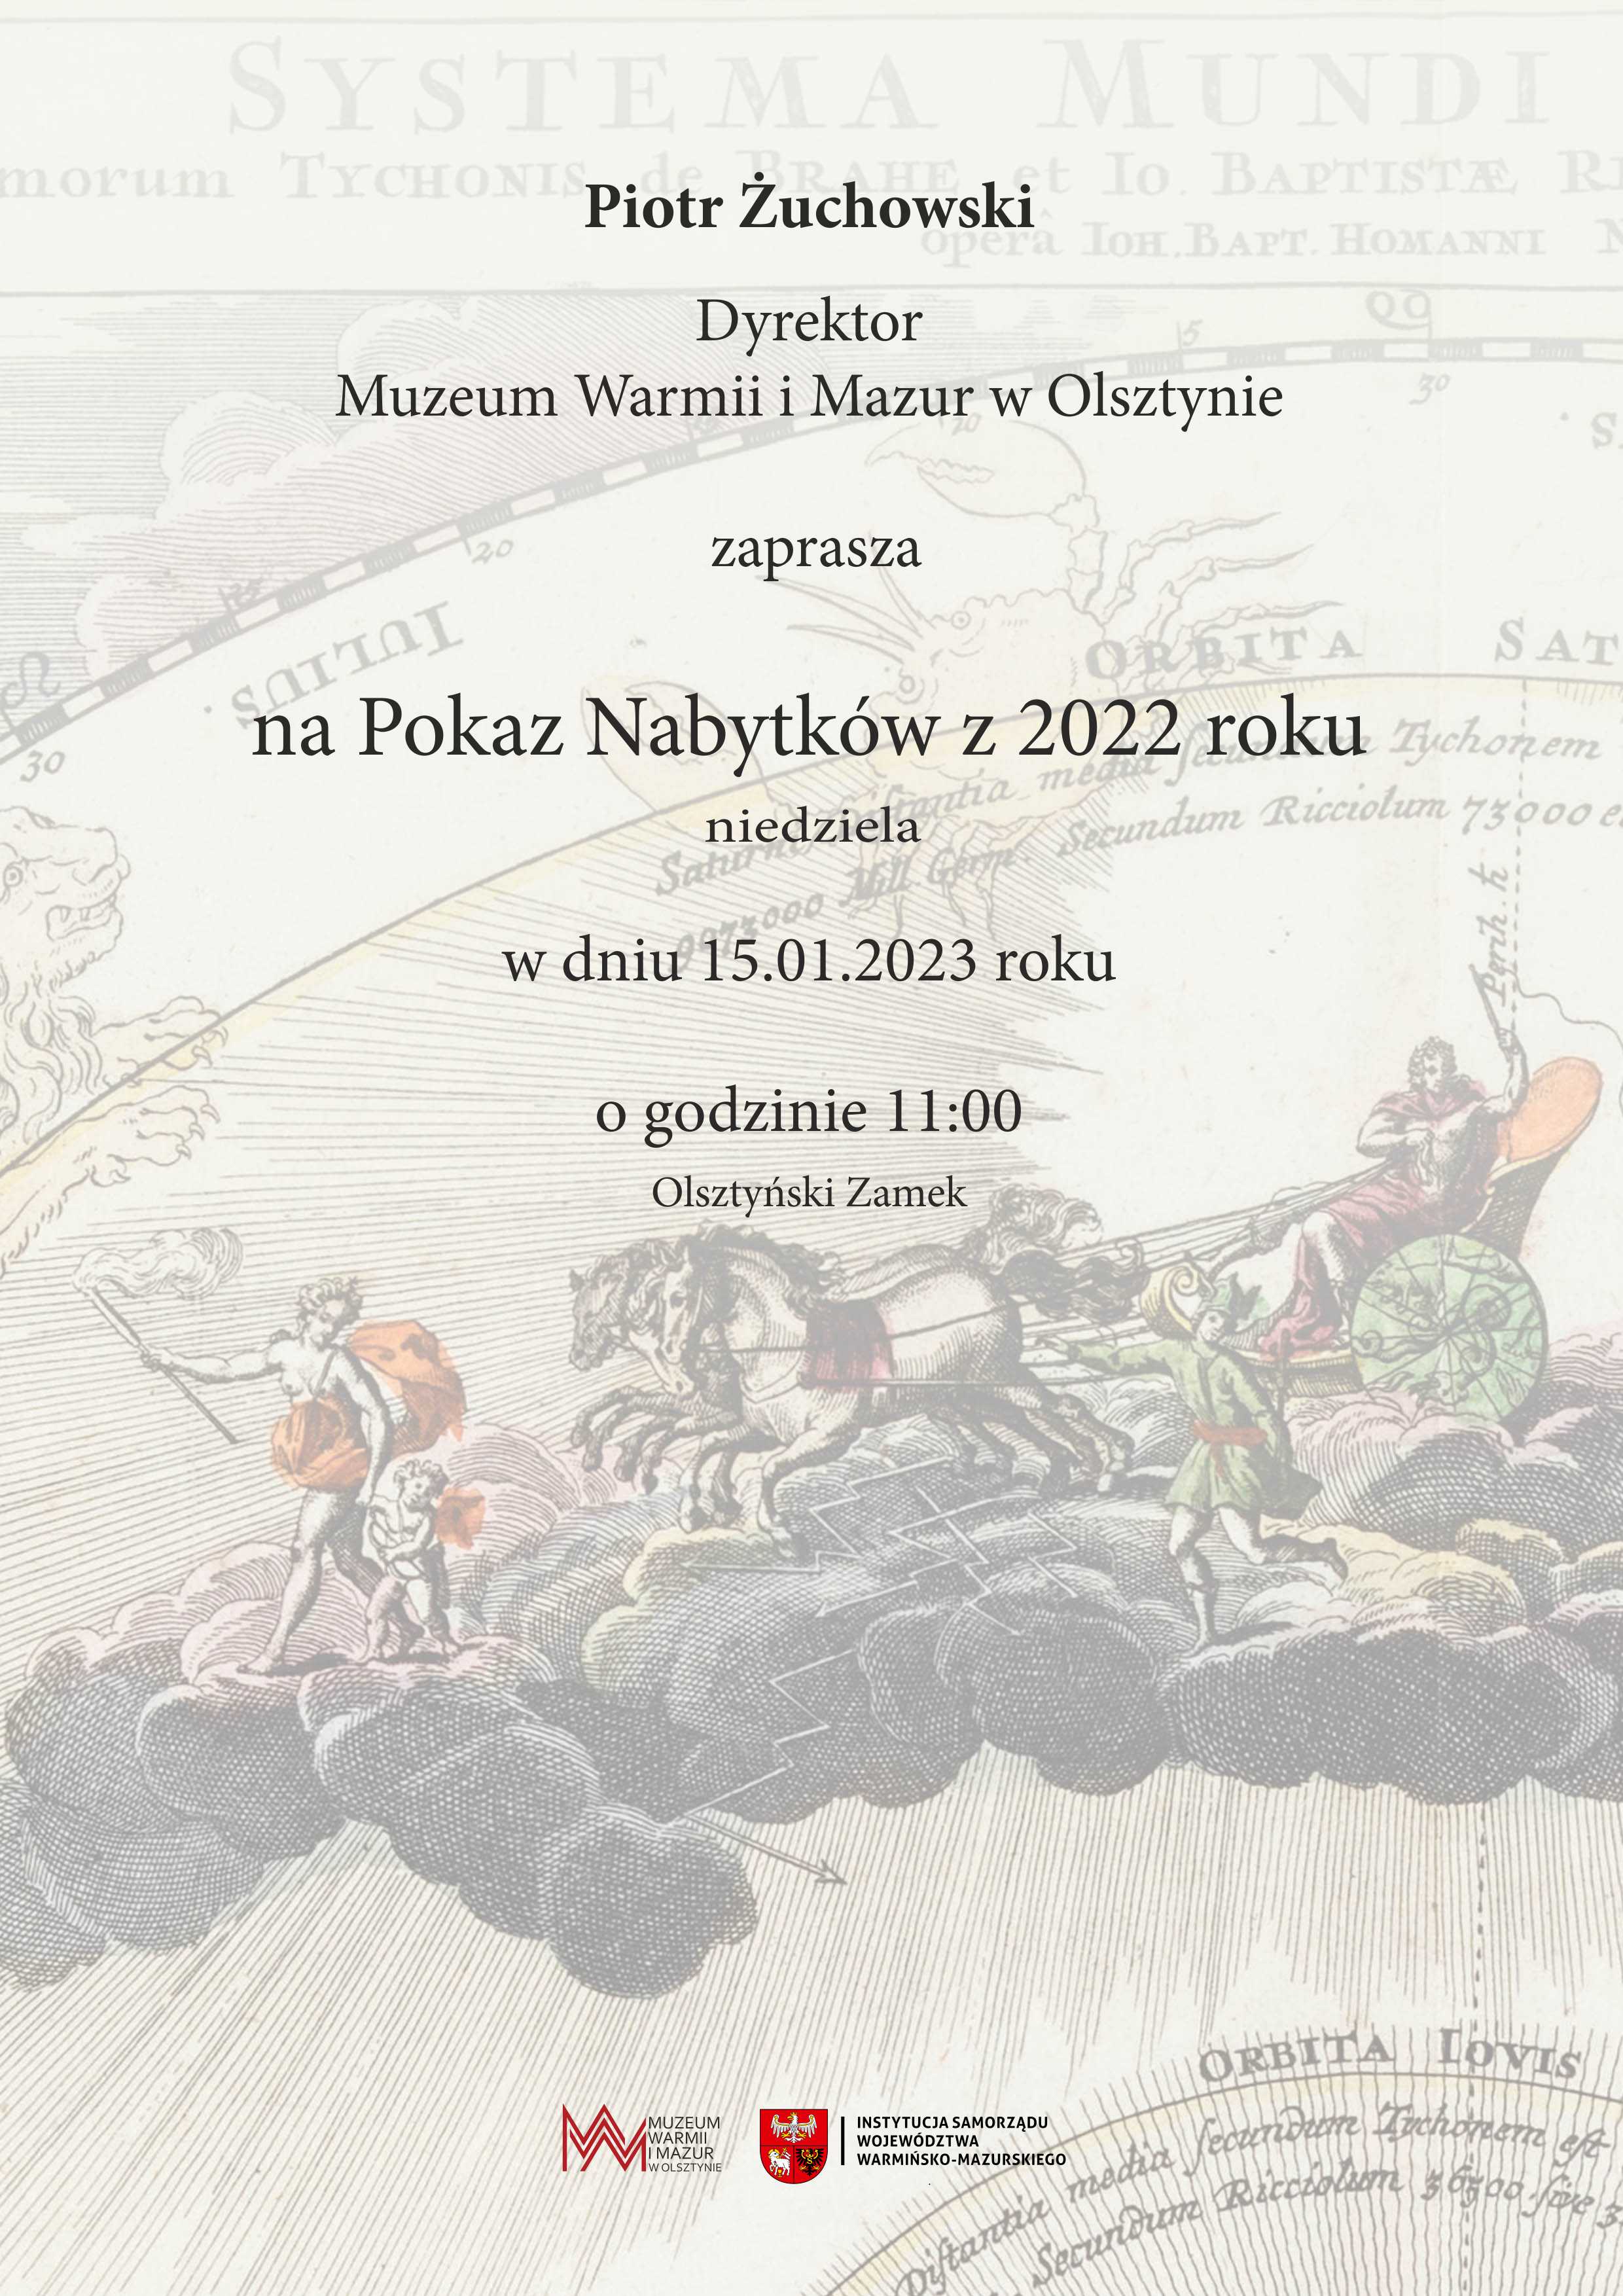 https://m.wmwm.pl/2023/01/orig/pokaz-nabytkow-plakat2-8164.jpg